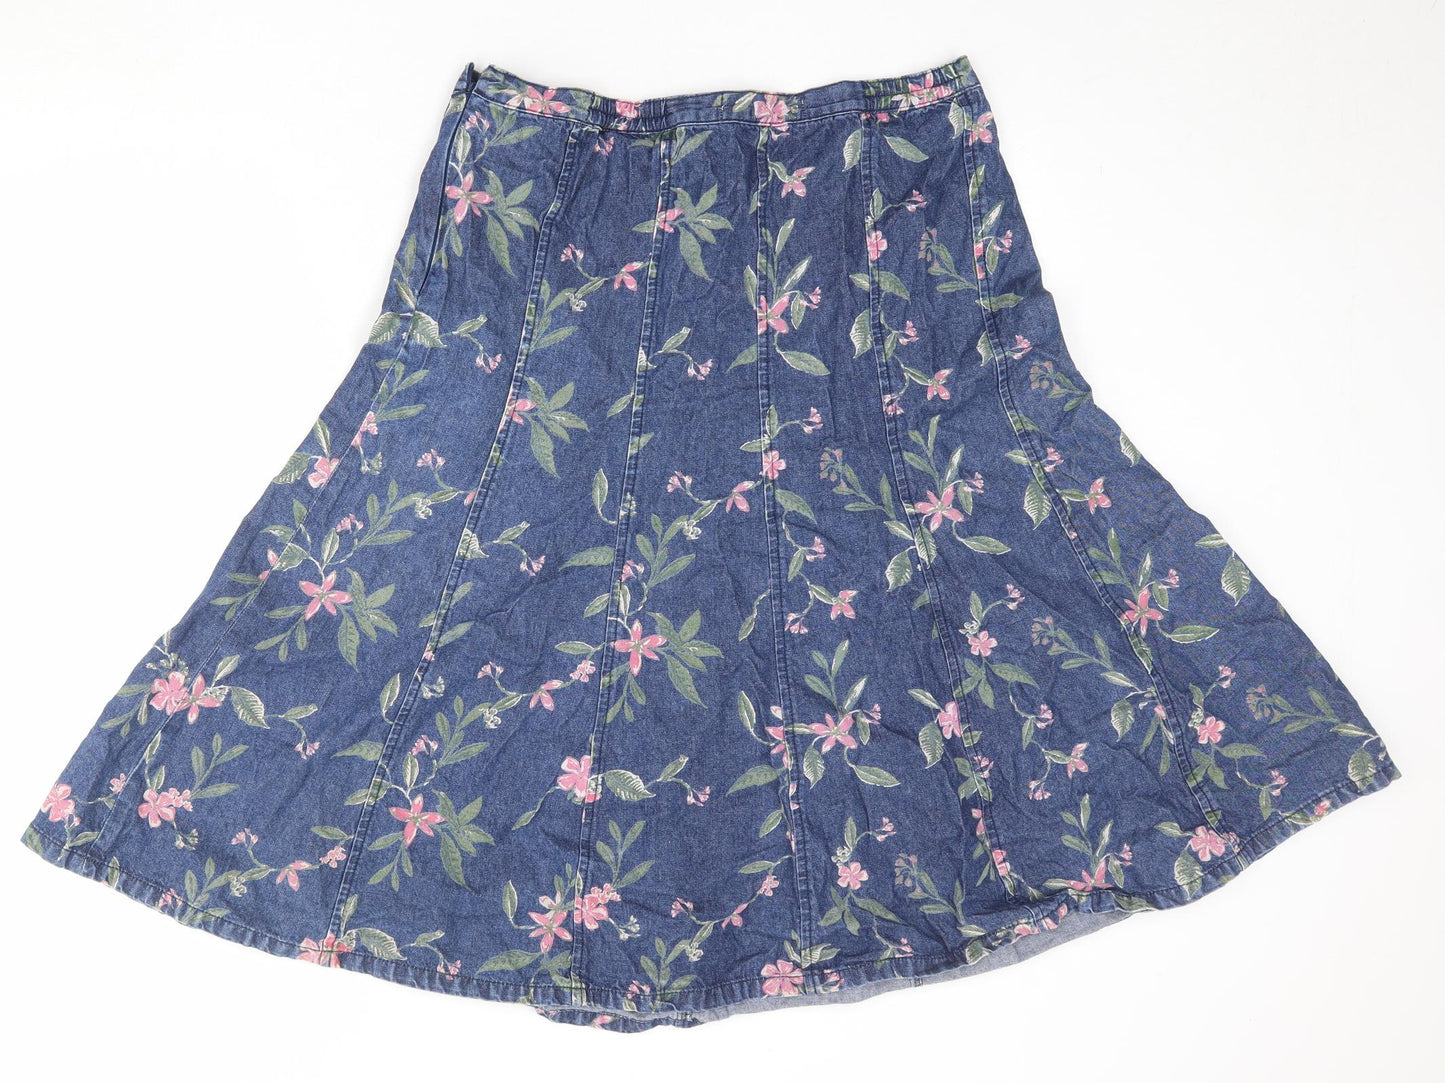 Bonmarché Womens Blue Floral Cotton Swing Skirt Size 14 Zip